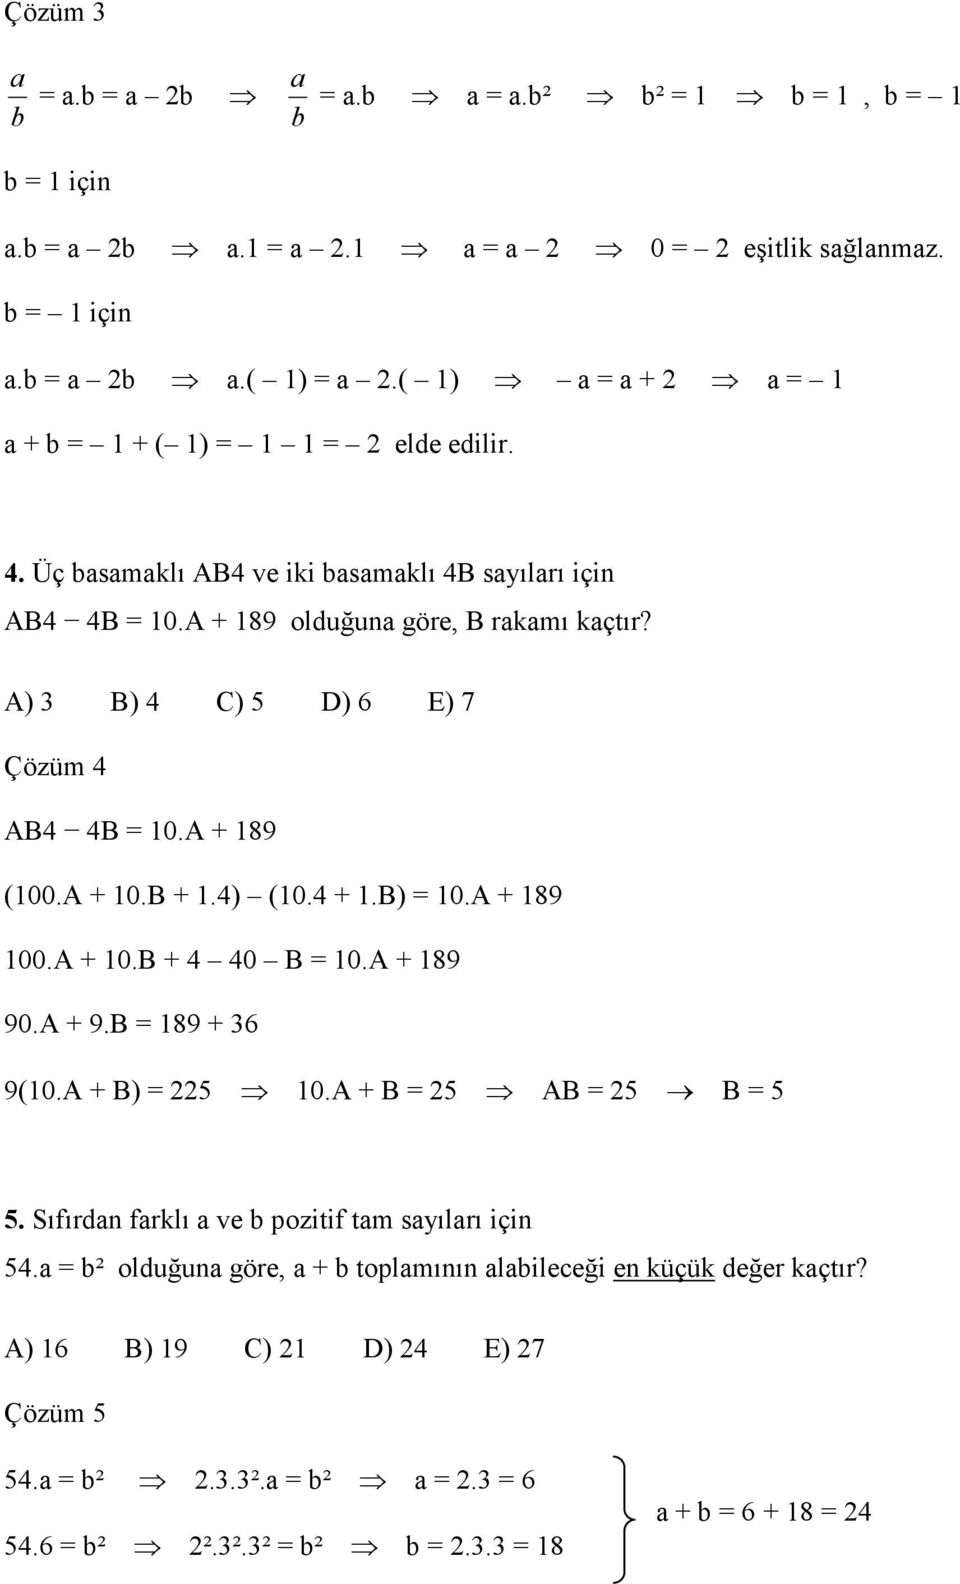 A) 3 B) 4 C) 5 D) 6 E) 7 Çözüm 4 AB4 4B = 10.A + 189 (100.A + 10.B + 1.4) (10.4 + 1.B) = 10.A + 189 100.A + 10.B + 4 40 B = 10.A + 189 90.A + 9.B = 189 + 36 9(10.A + B) = 5 10.